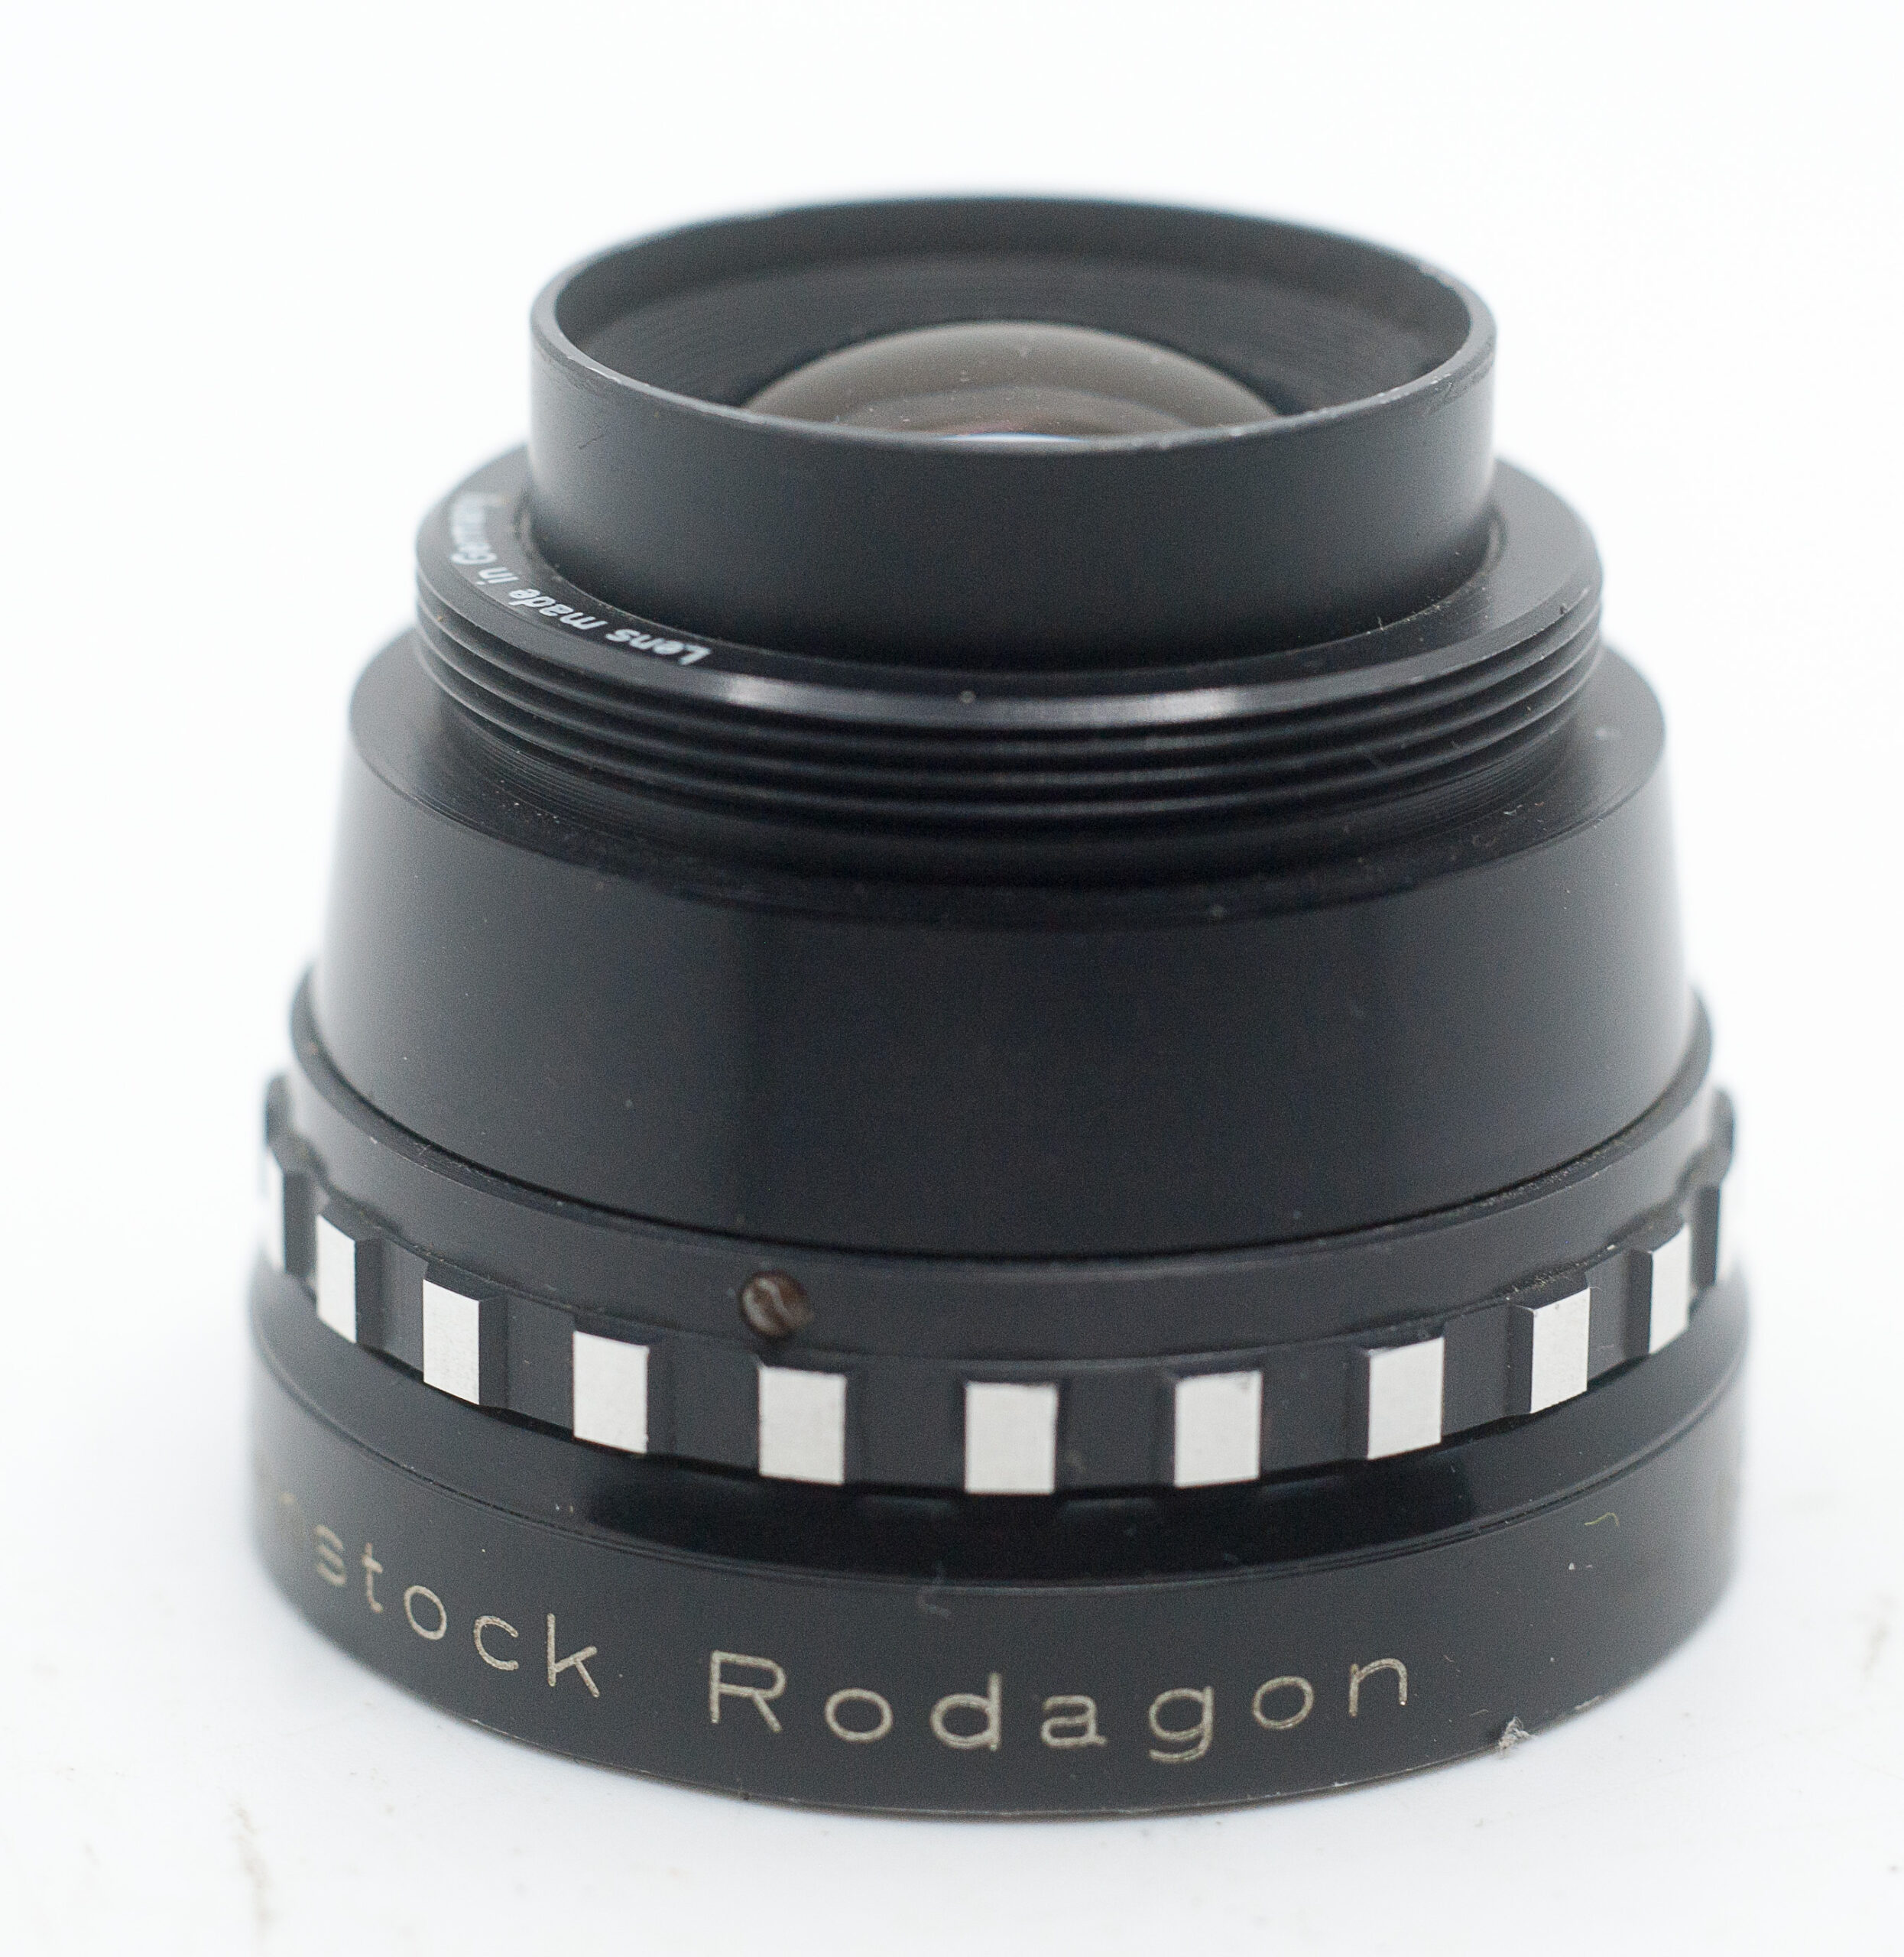 Rodenstock Rodagon 105mm F5.6 - Enlarger lens - M39 (**READ 